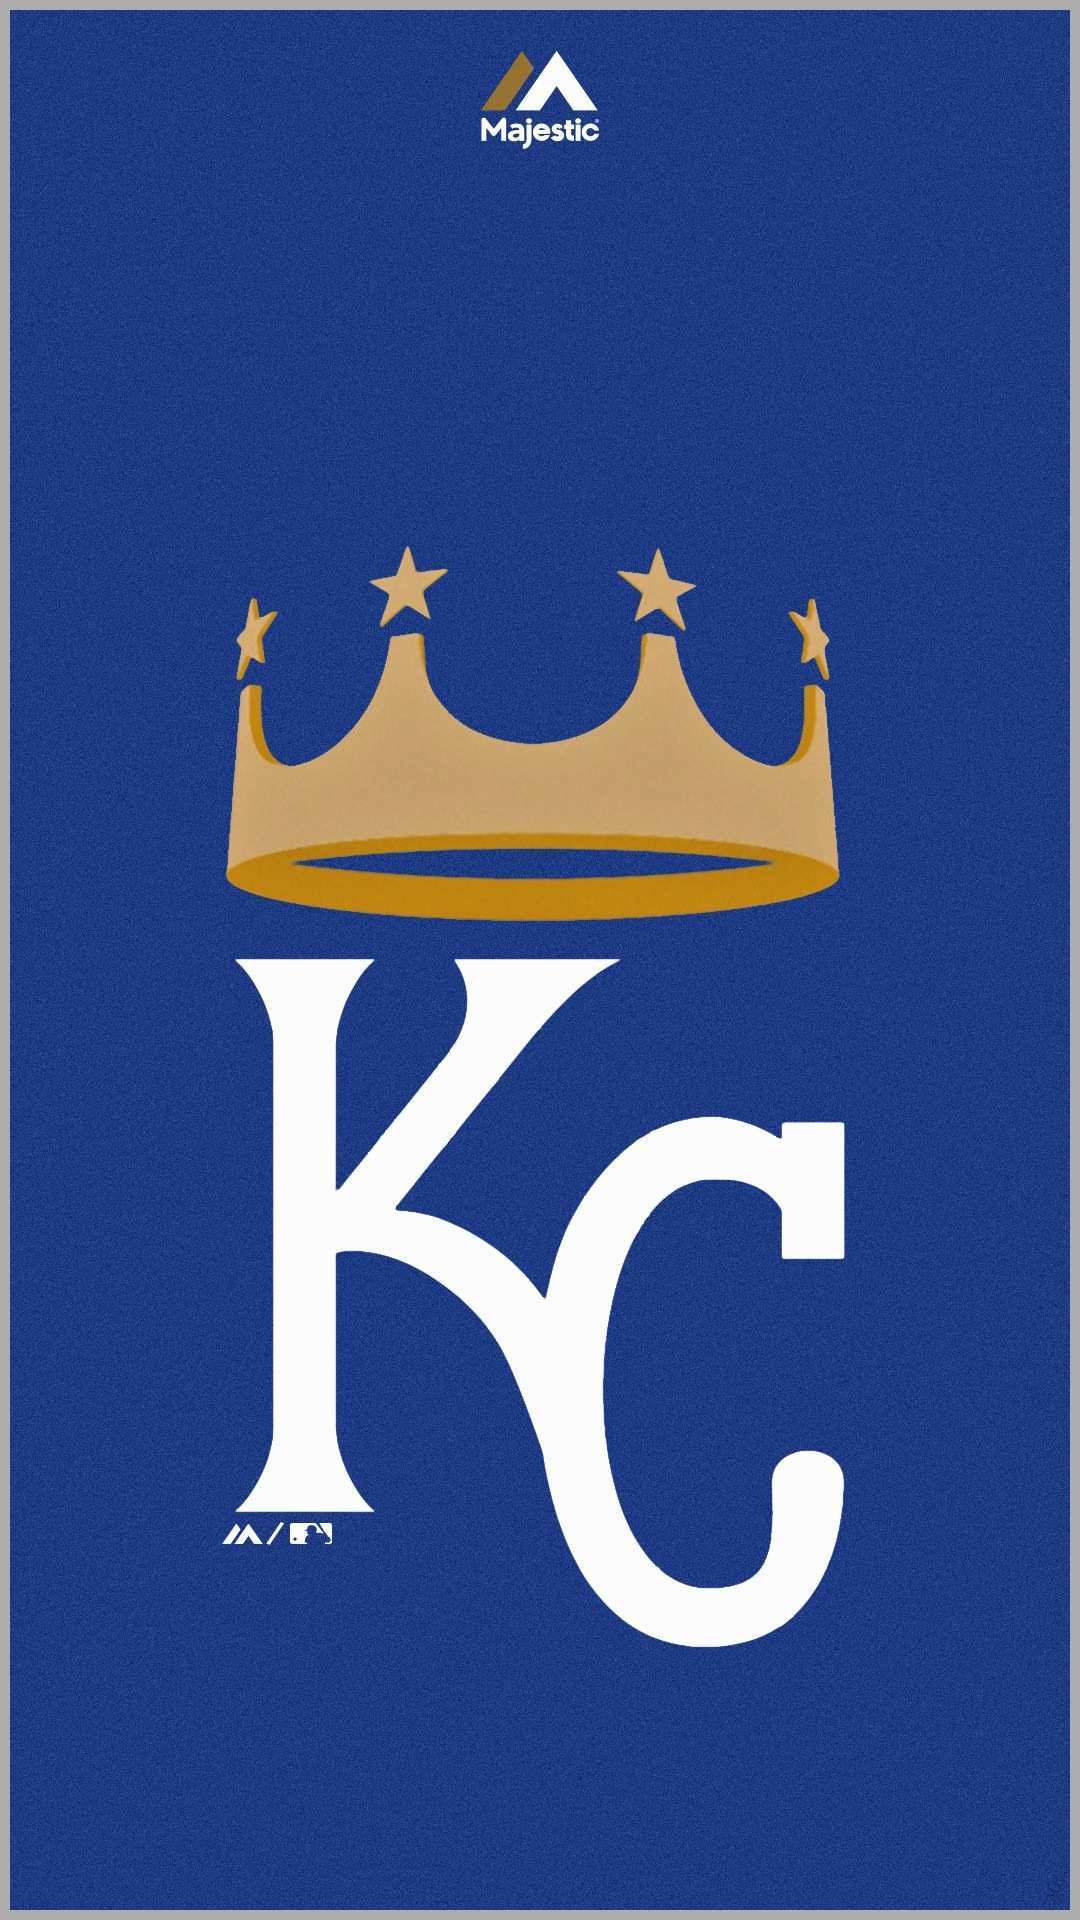 Kansas City Royals Wallpaper Image